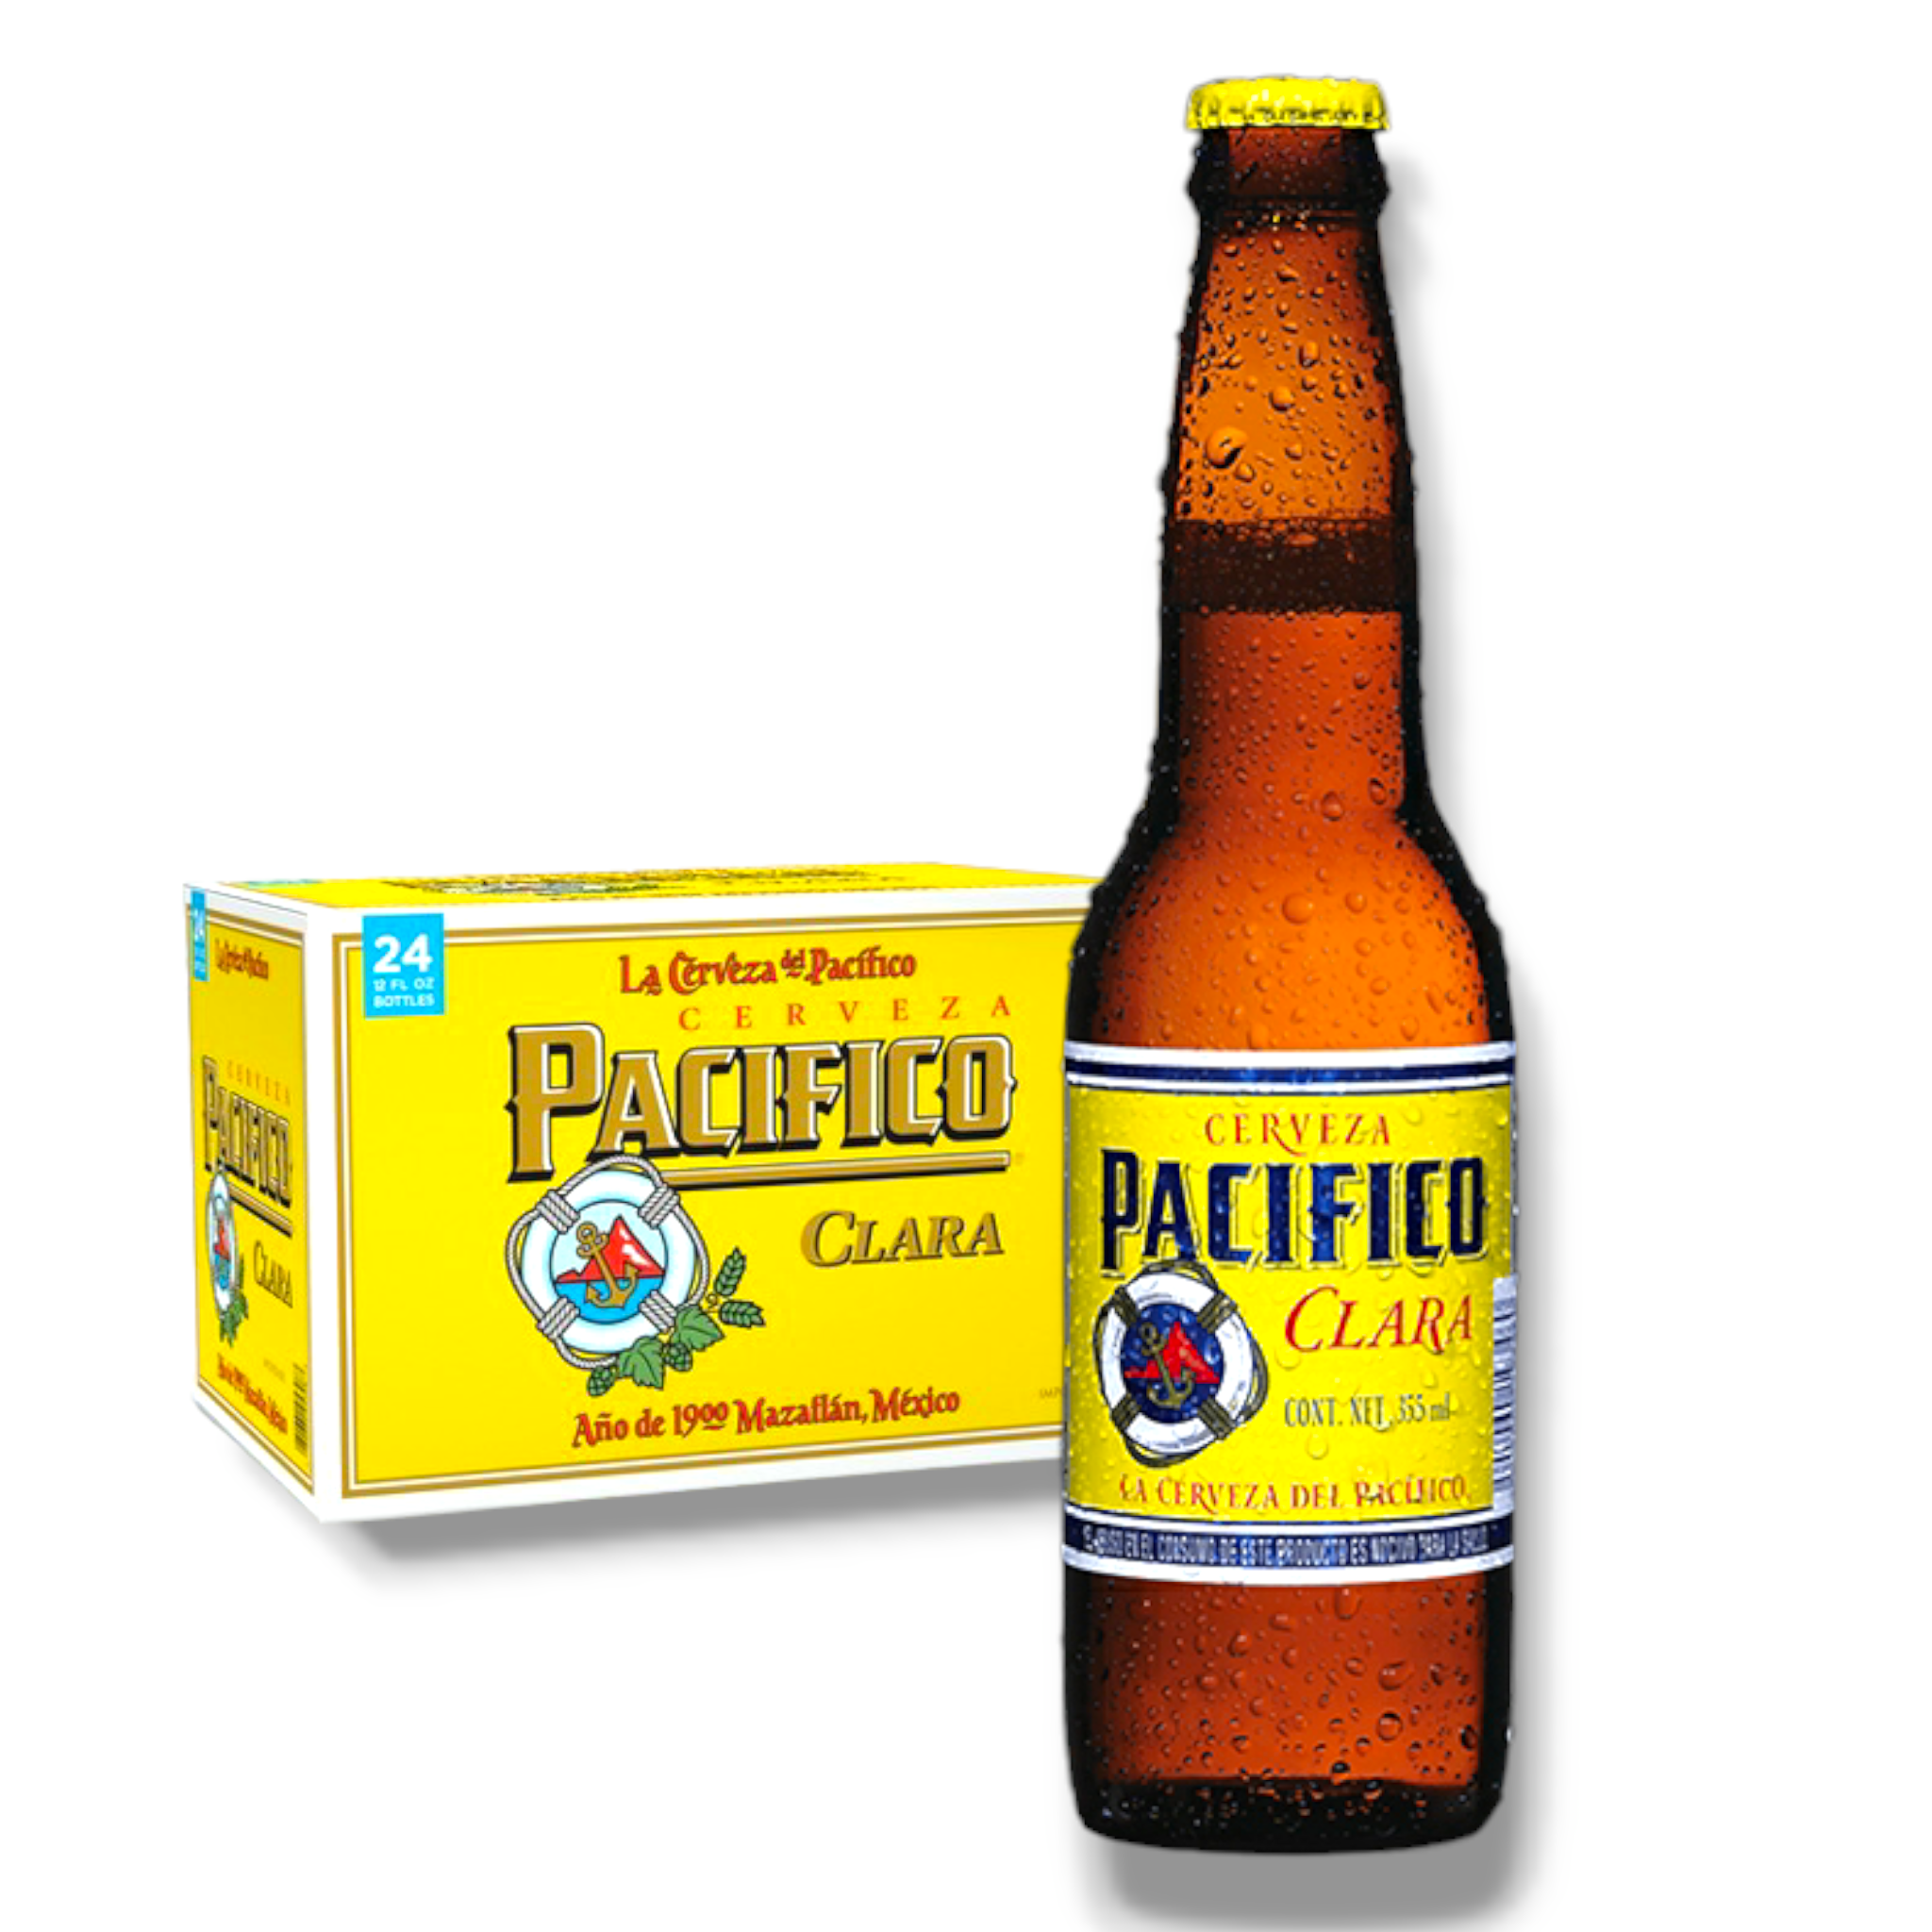 Pacifico Clara 355ml - helles Bier aus Mexiko mit 4,5% Vol.